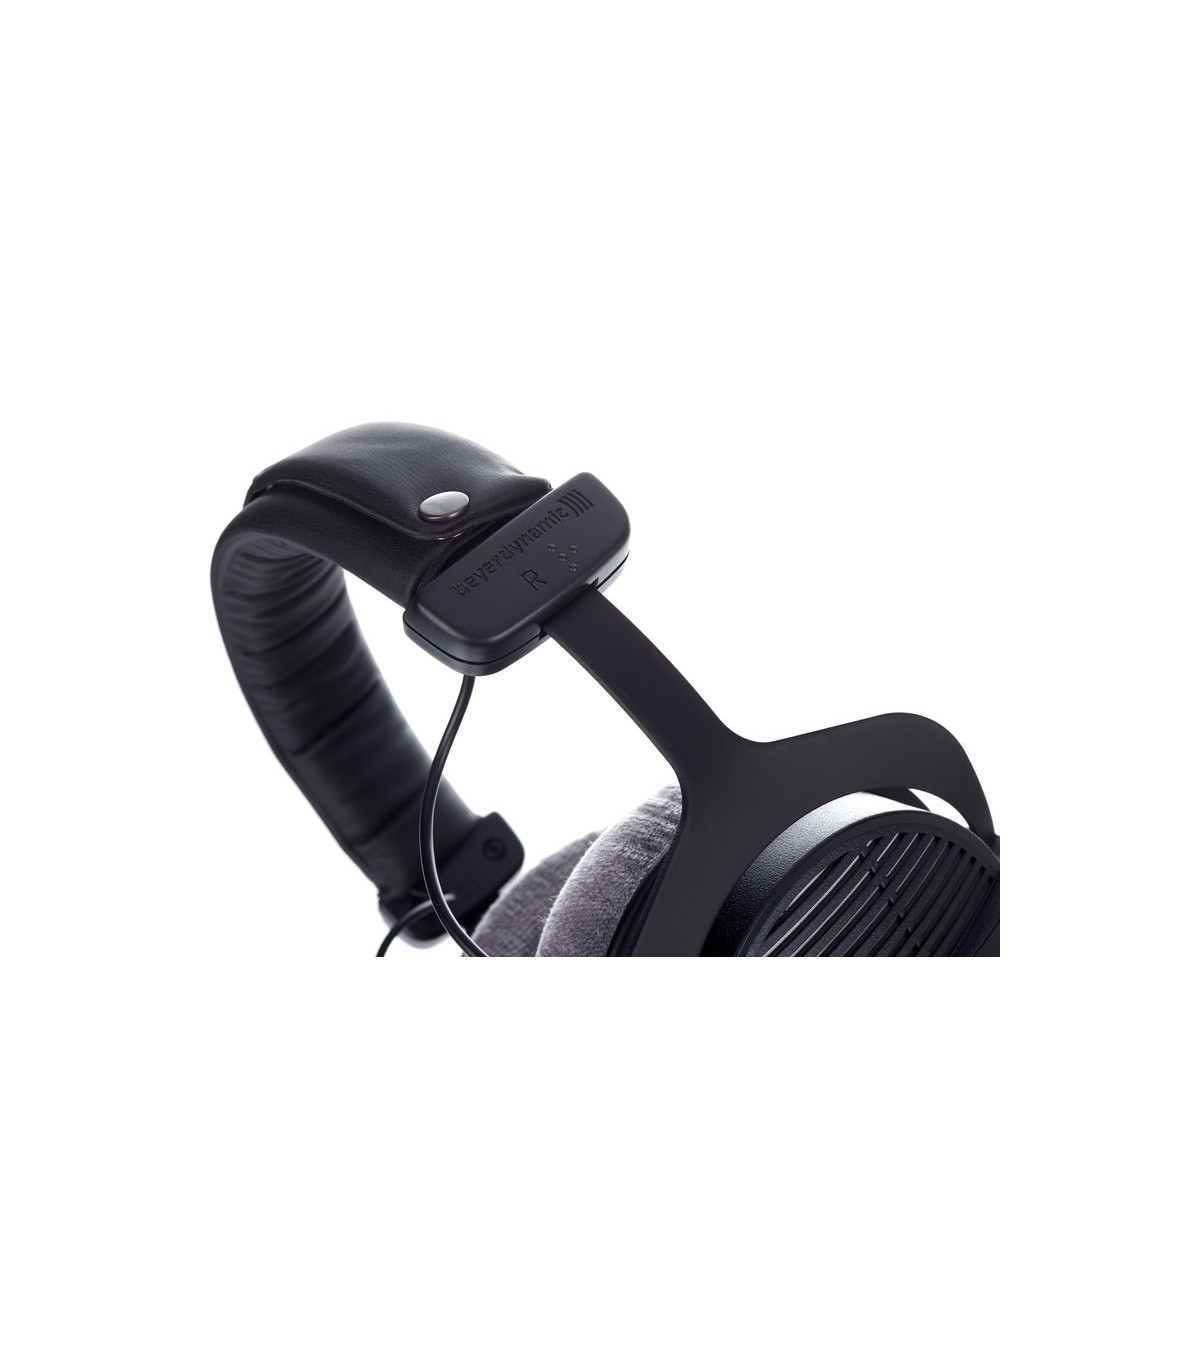 Beyerdynamic On-Ear Headphones Black, DT 990 PRO 